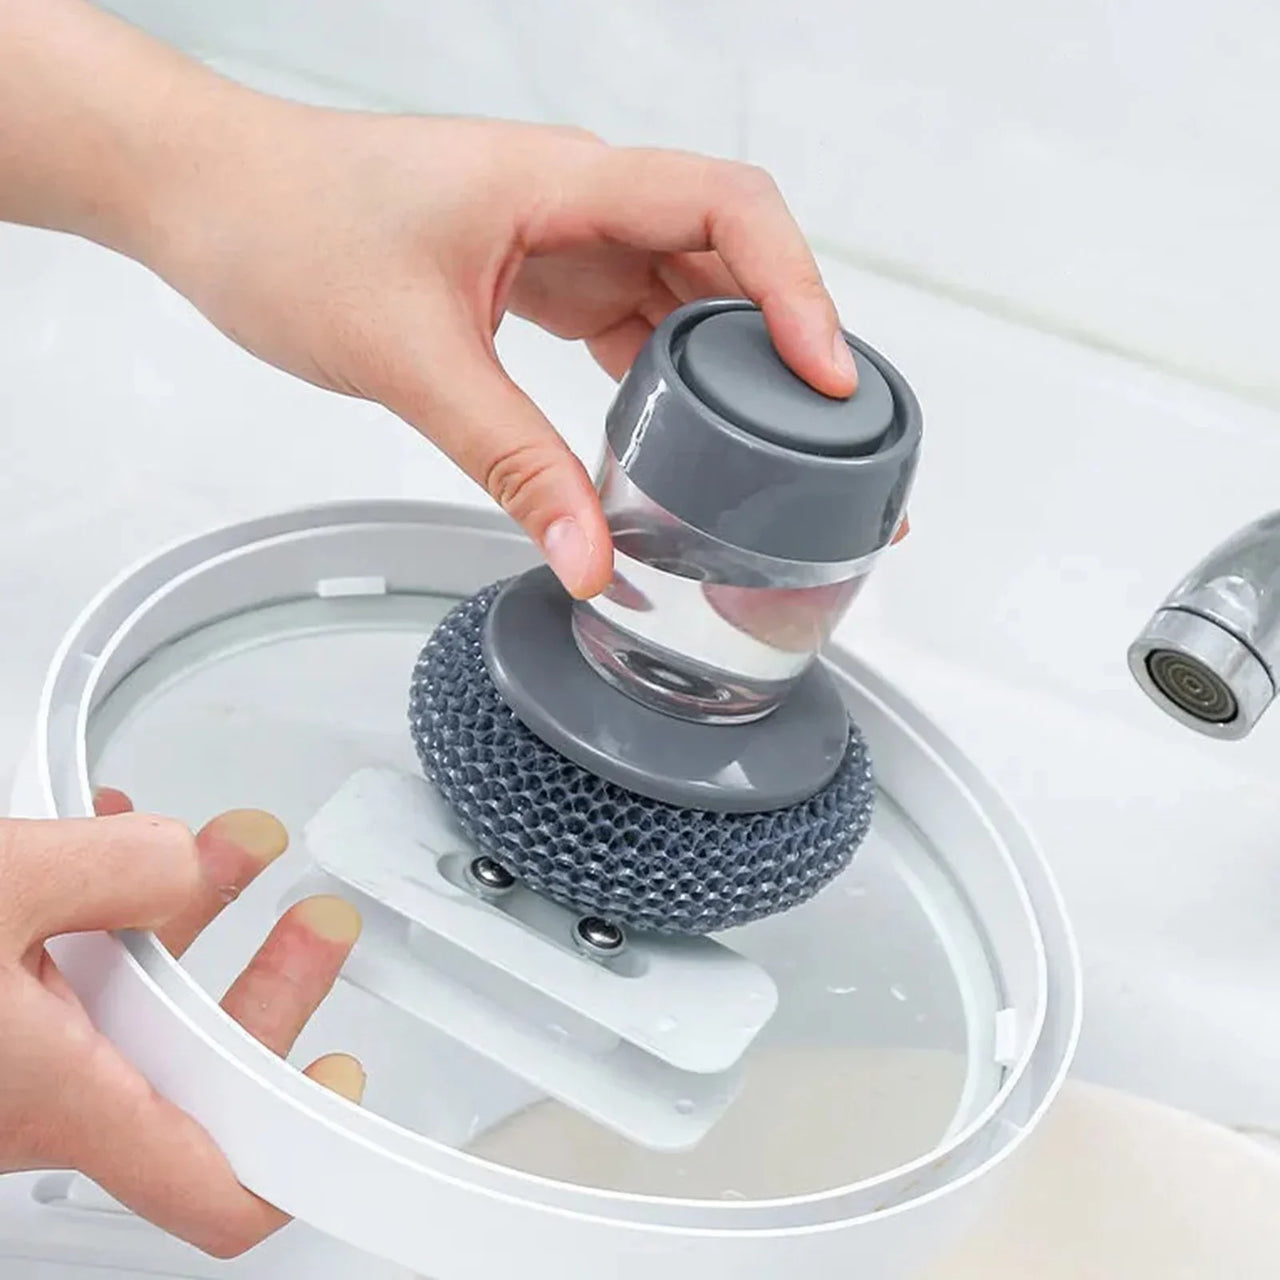 Soap Dispenser For The Kitchen Hand Brush